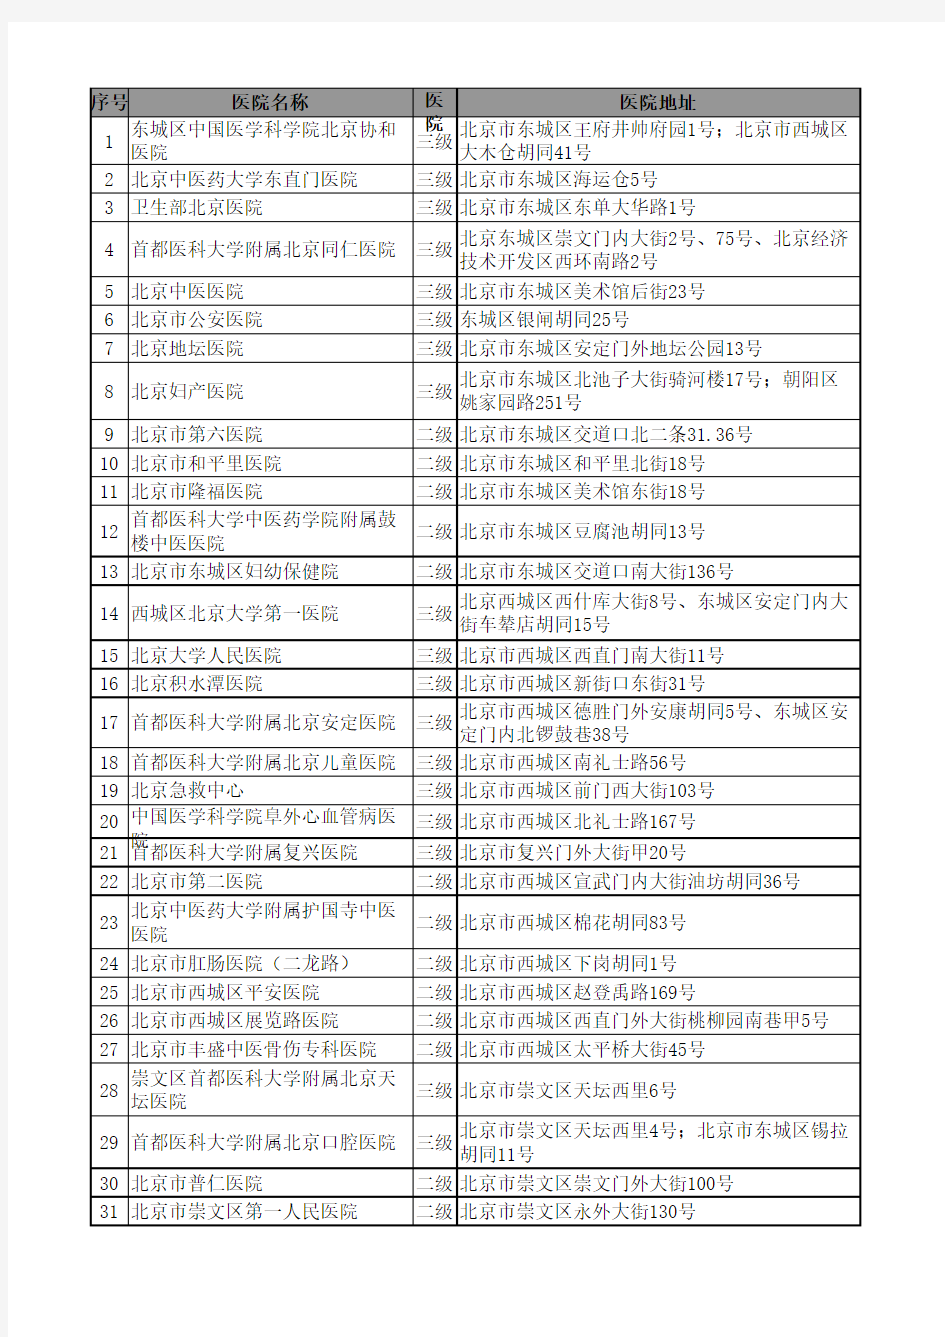 北京二级甲等以上医院名单